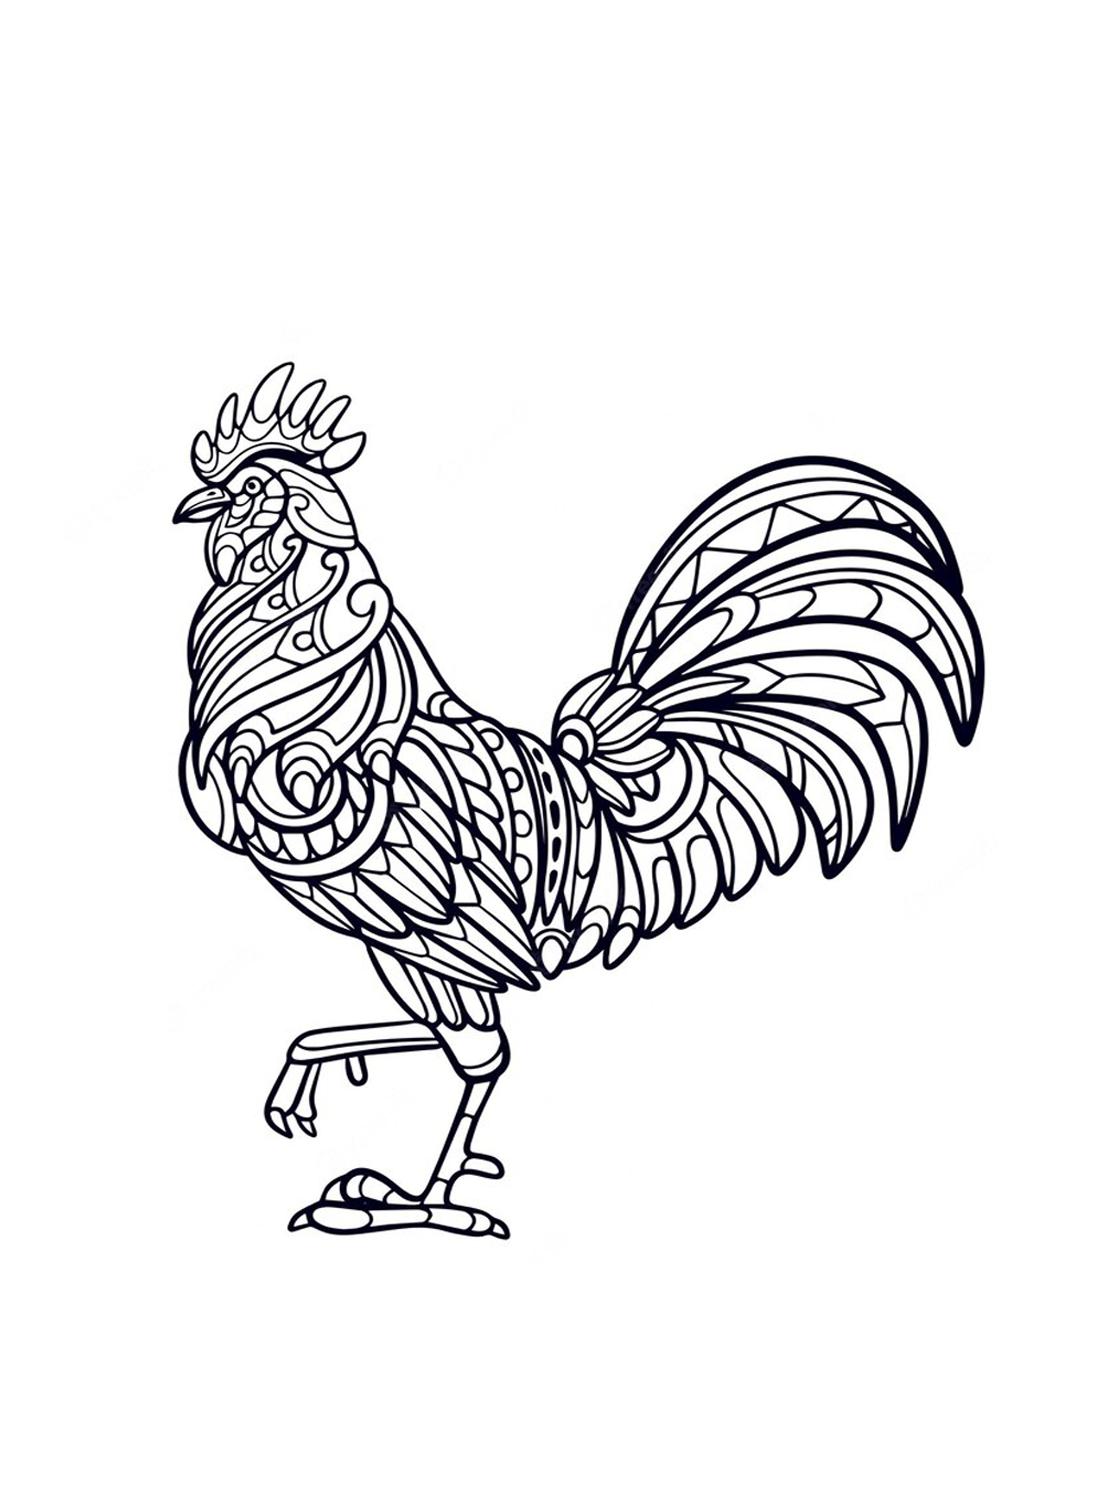 Ein Musterhahn von Rooster